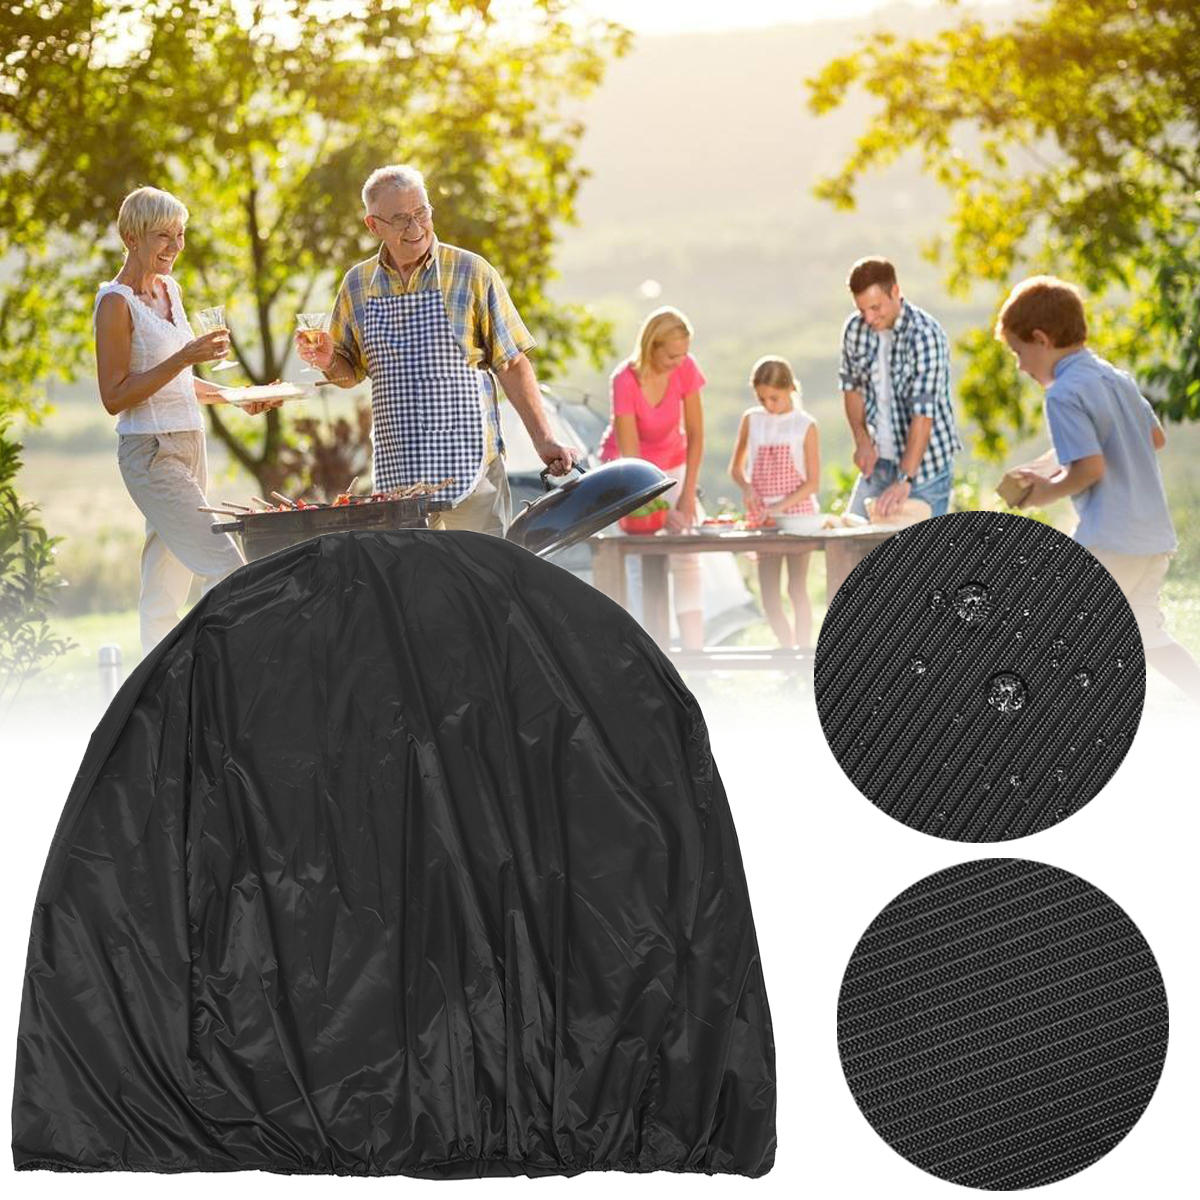 BBQ-Grill-Abdeckung für den Außenbereich von 134x64,7x149,3 cm für Camping und Picknick. Schützt vor Regen, Staub, UV-Strahlen und Feuchtigkeit.